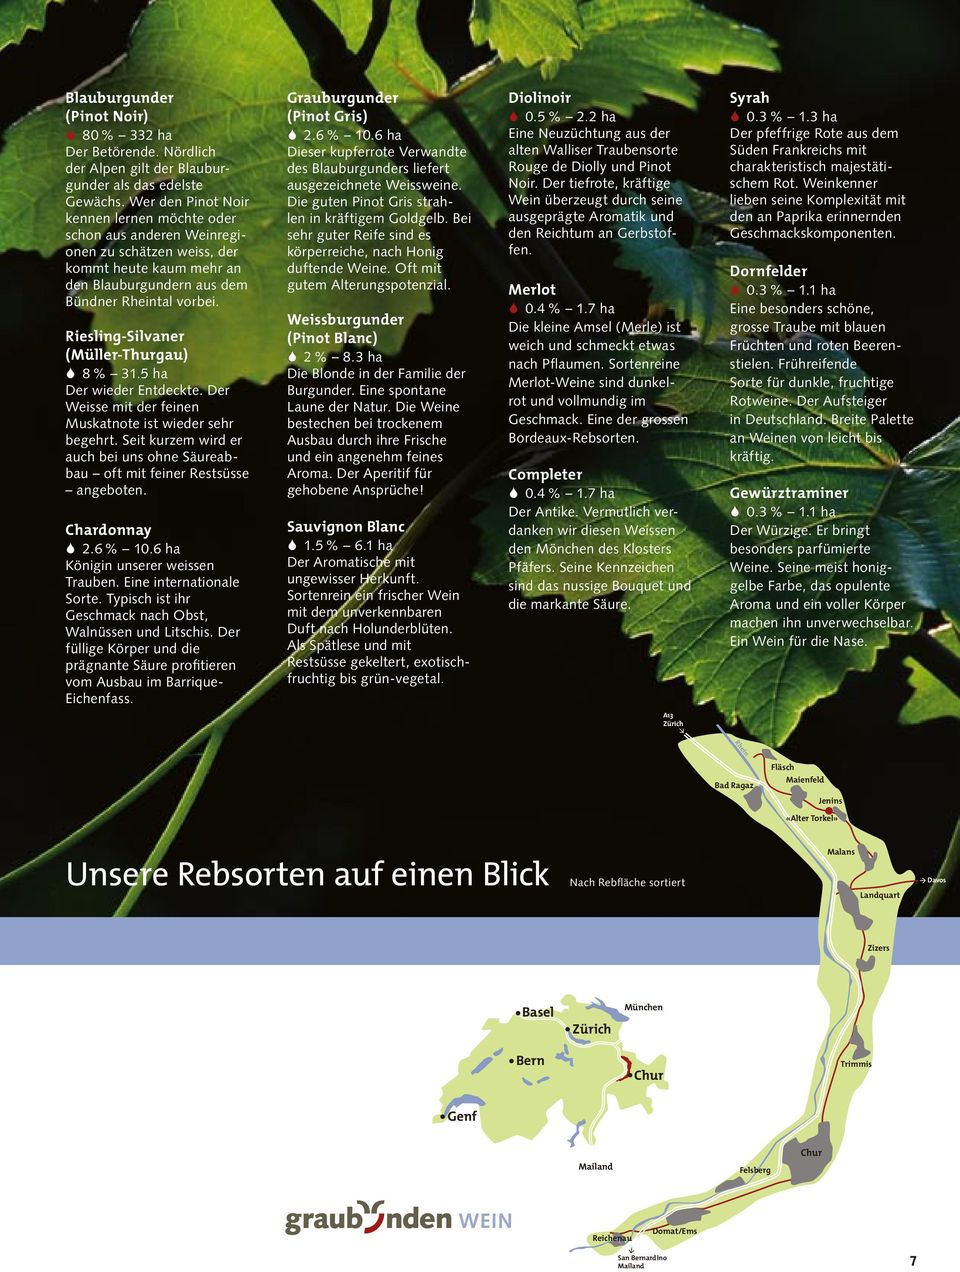 Riesling-Silvaner (Müller-Thurgau) S 8 % 31.5 ha Der wieder Entdeckte. Der Weisse mit der feinen Muskatnote ist wieder sehr begehrt.